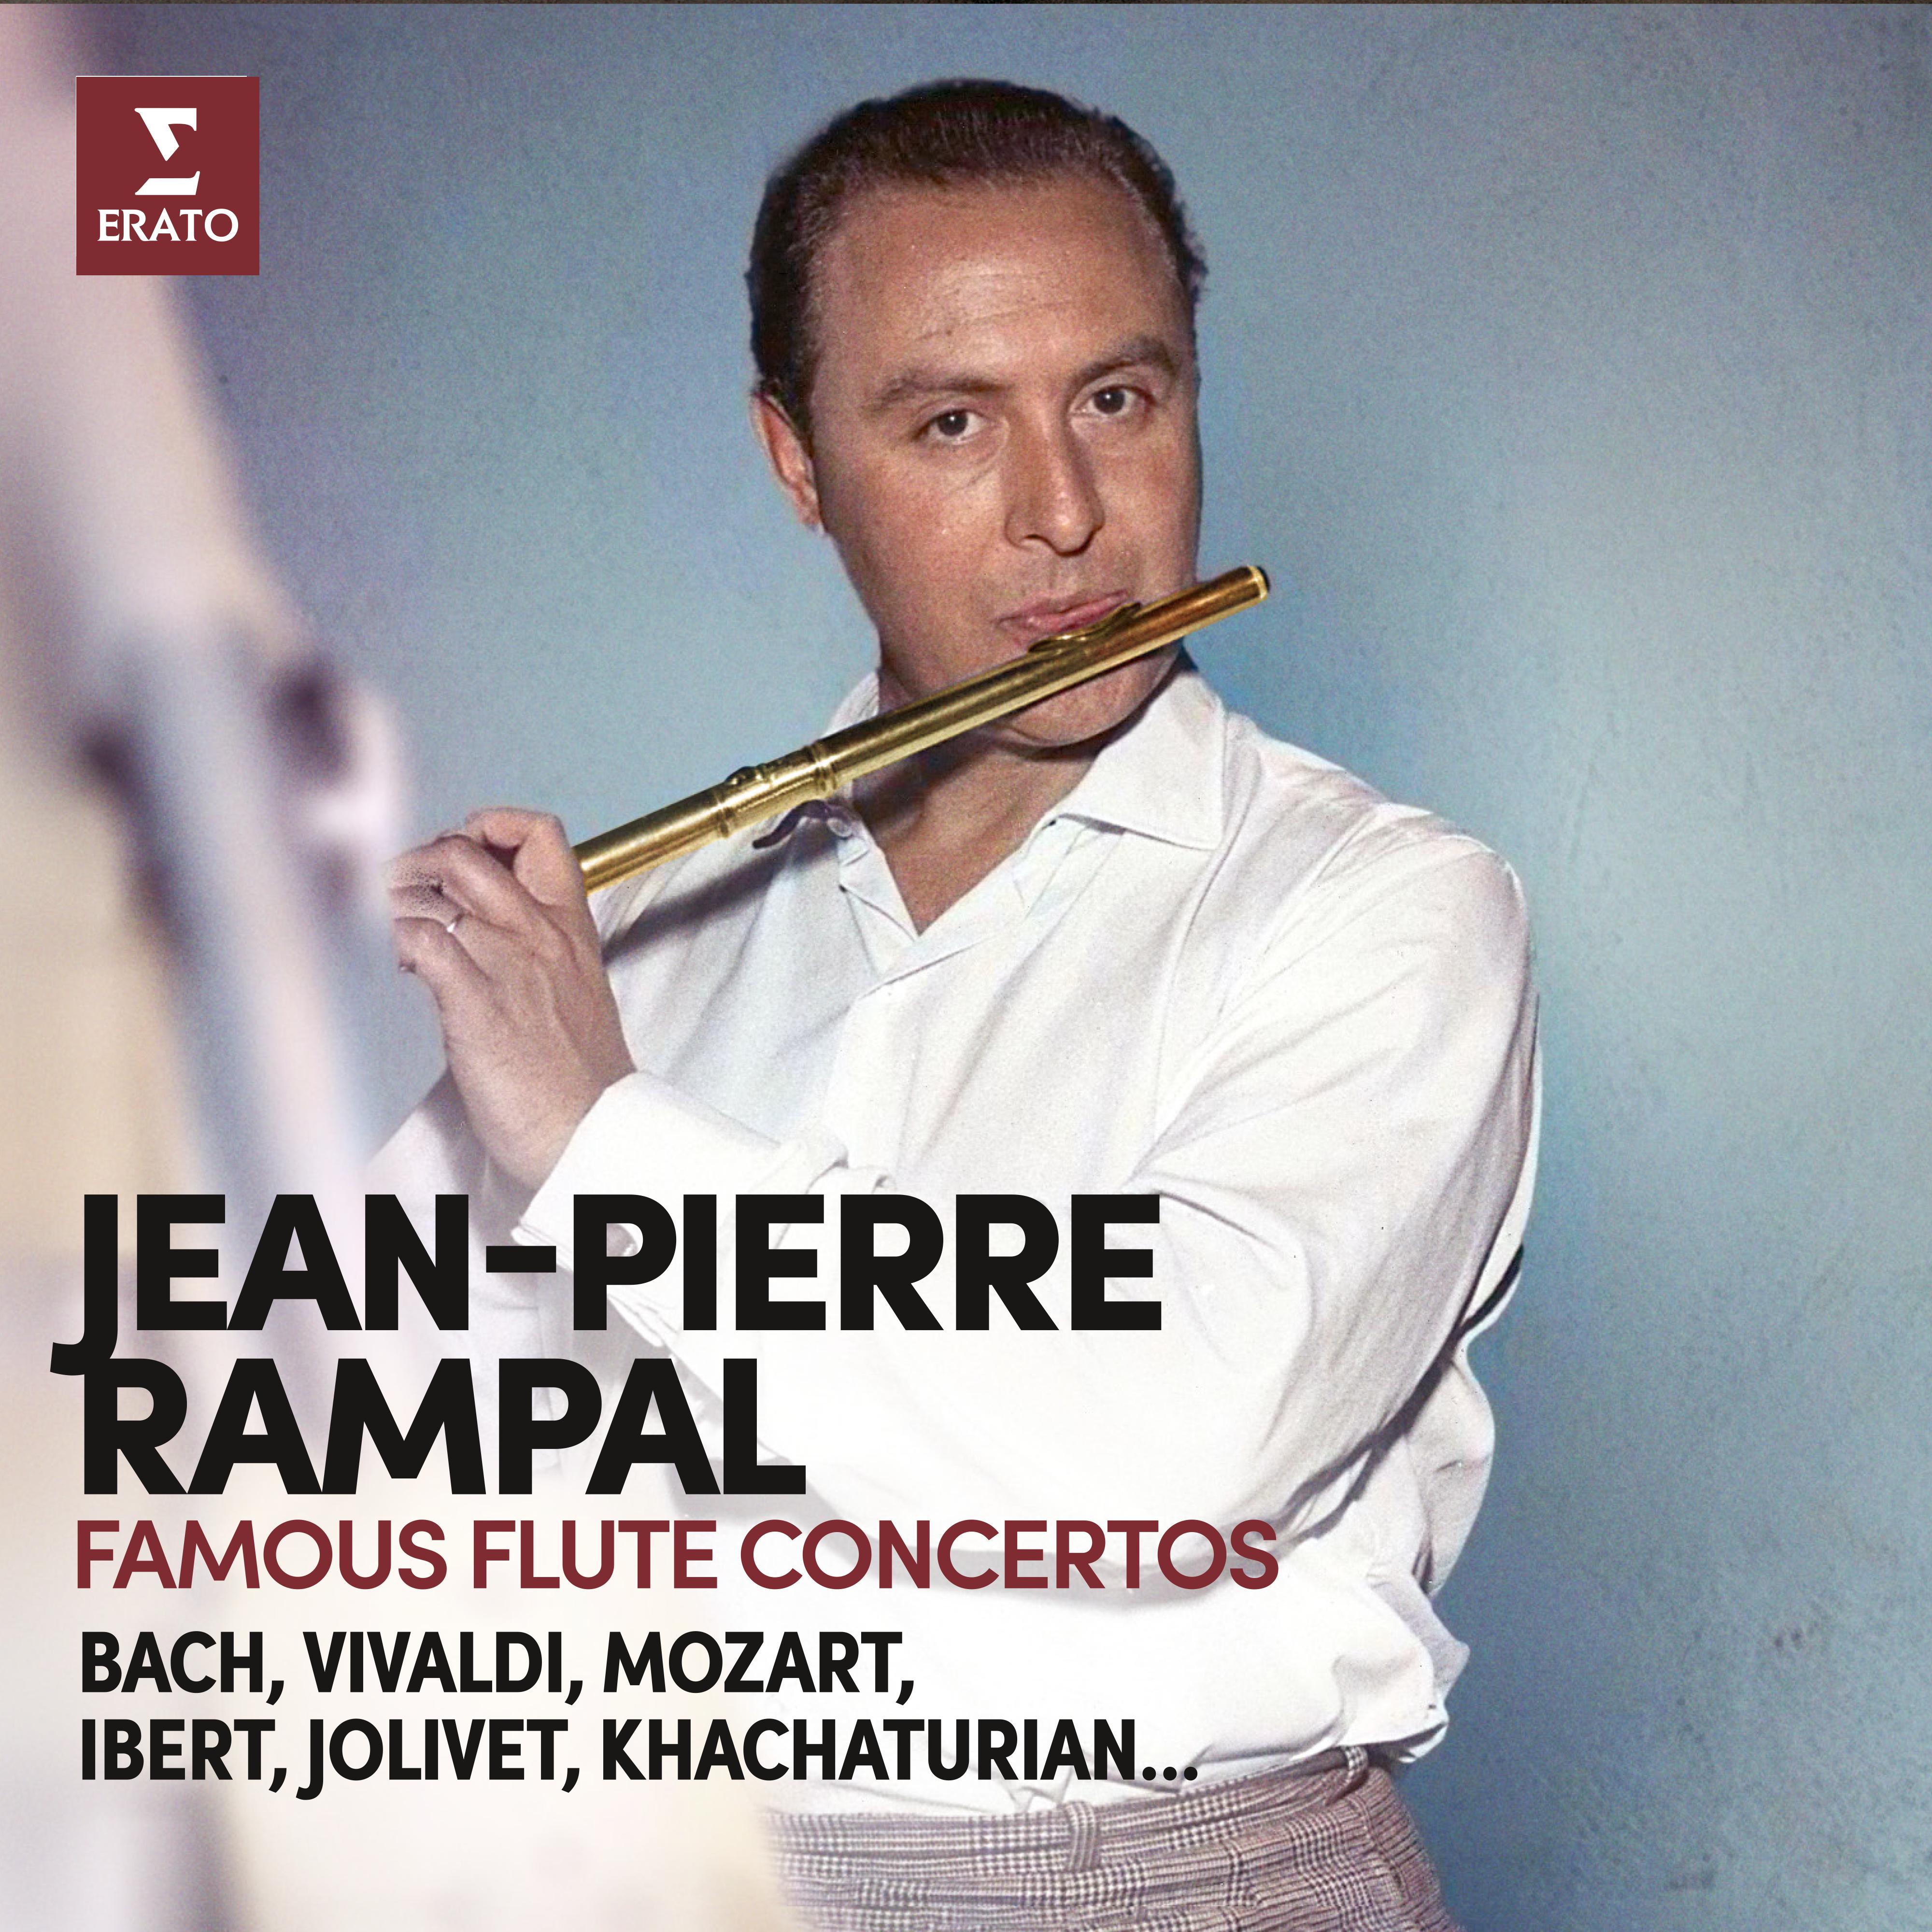 Jean-Pierre Rampal - Flute Concerto in C Major, Op. 7 No. 3:III. Allegro assai